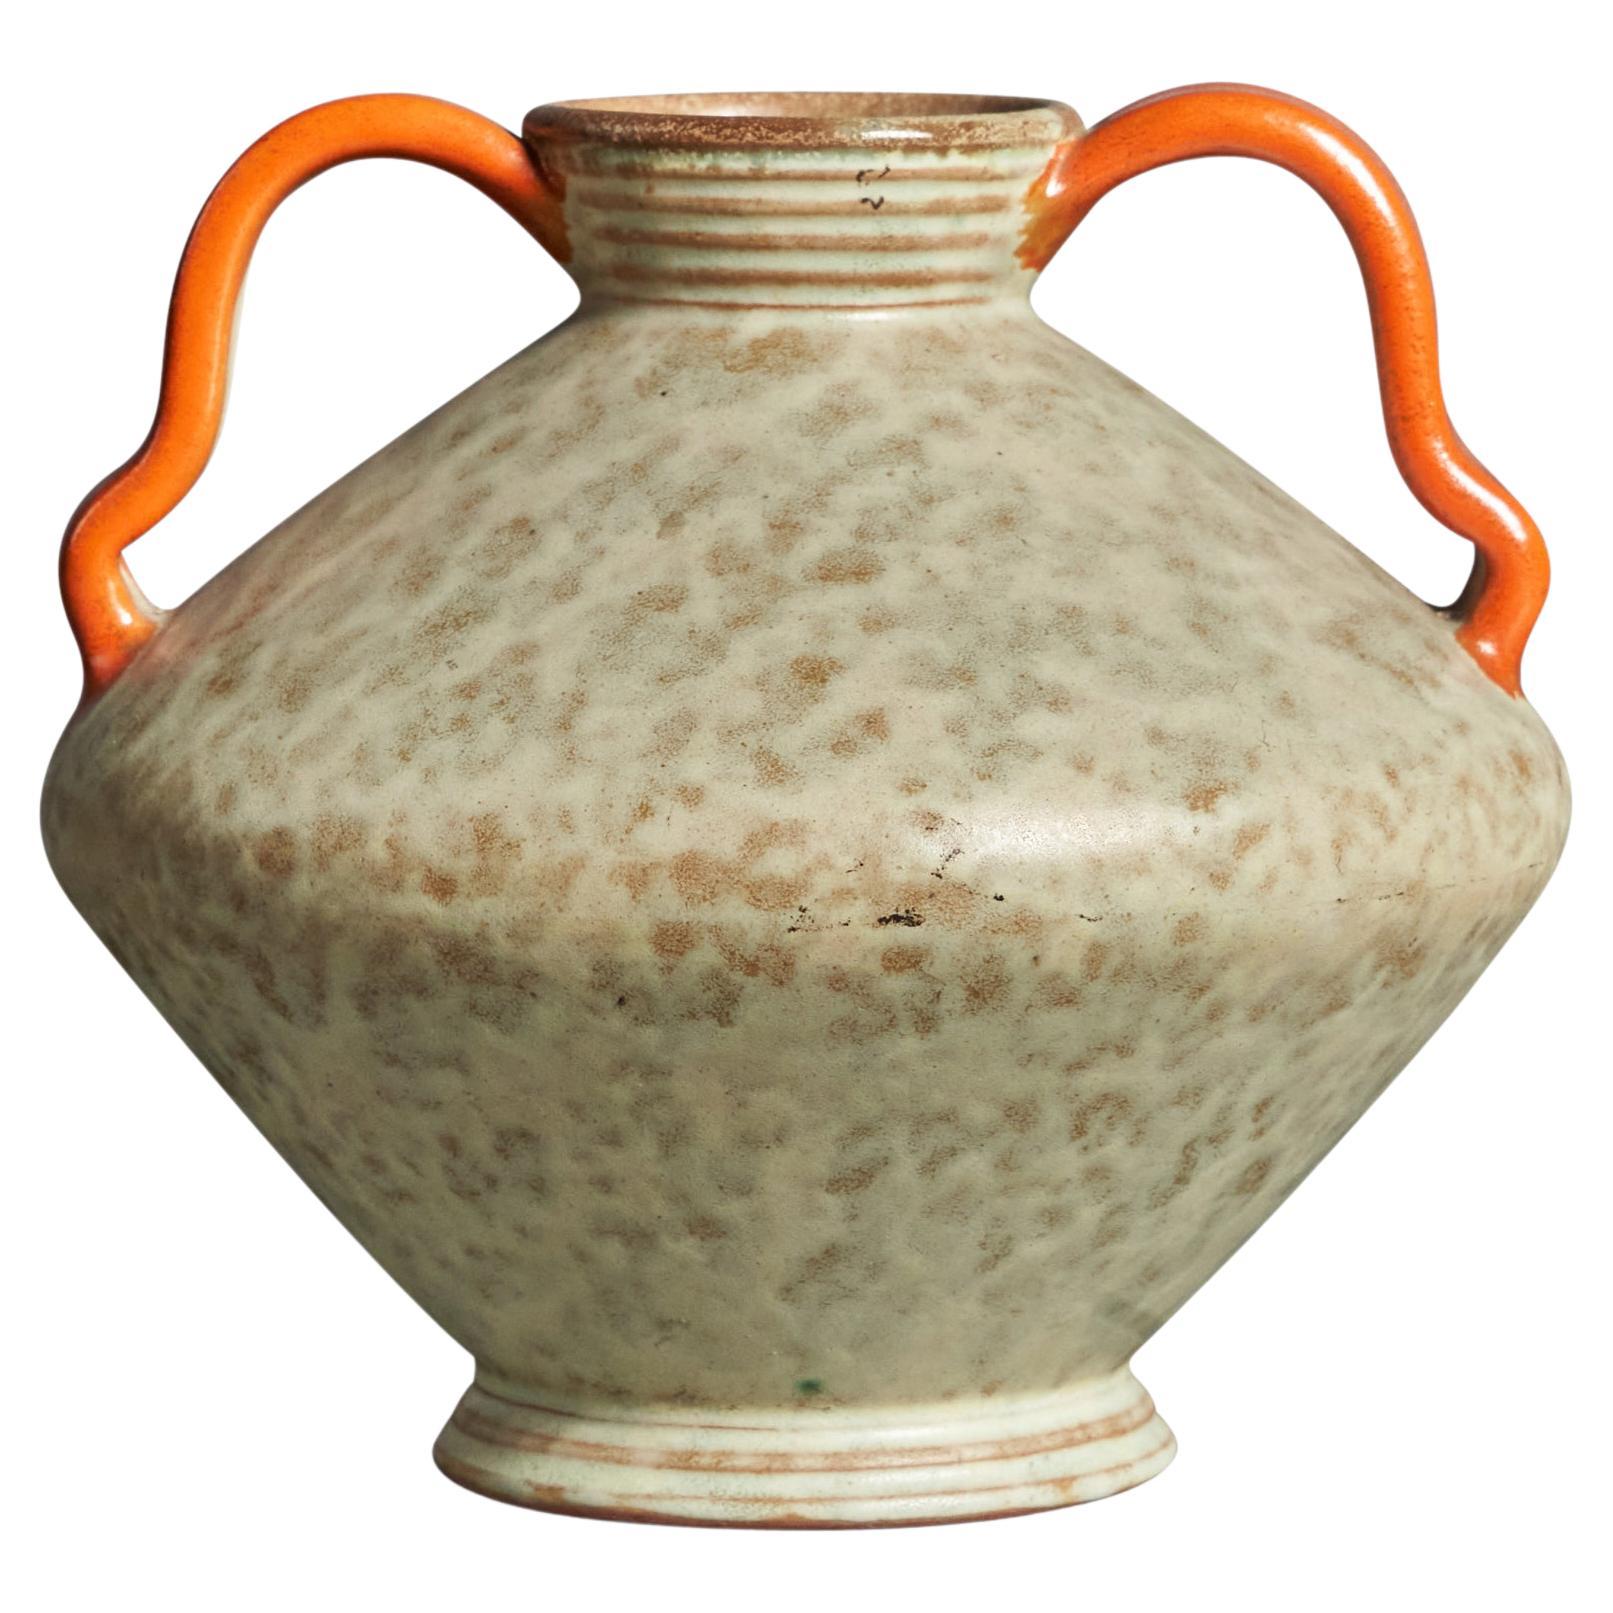 Töreboda Keramik, Vase, Earthenware, Sweden, 1930s